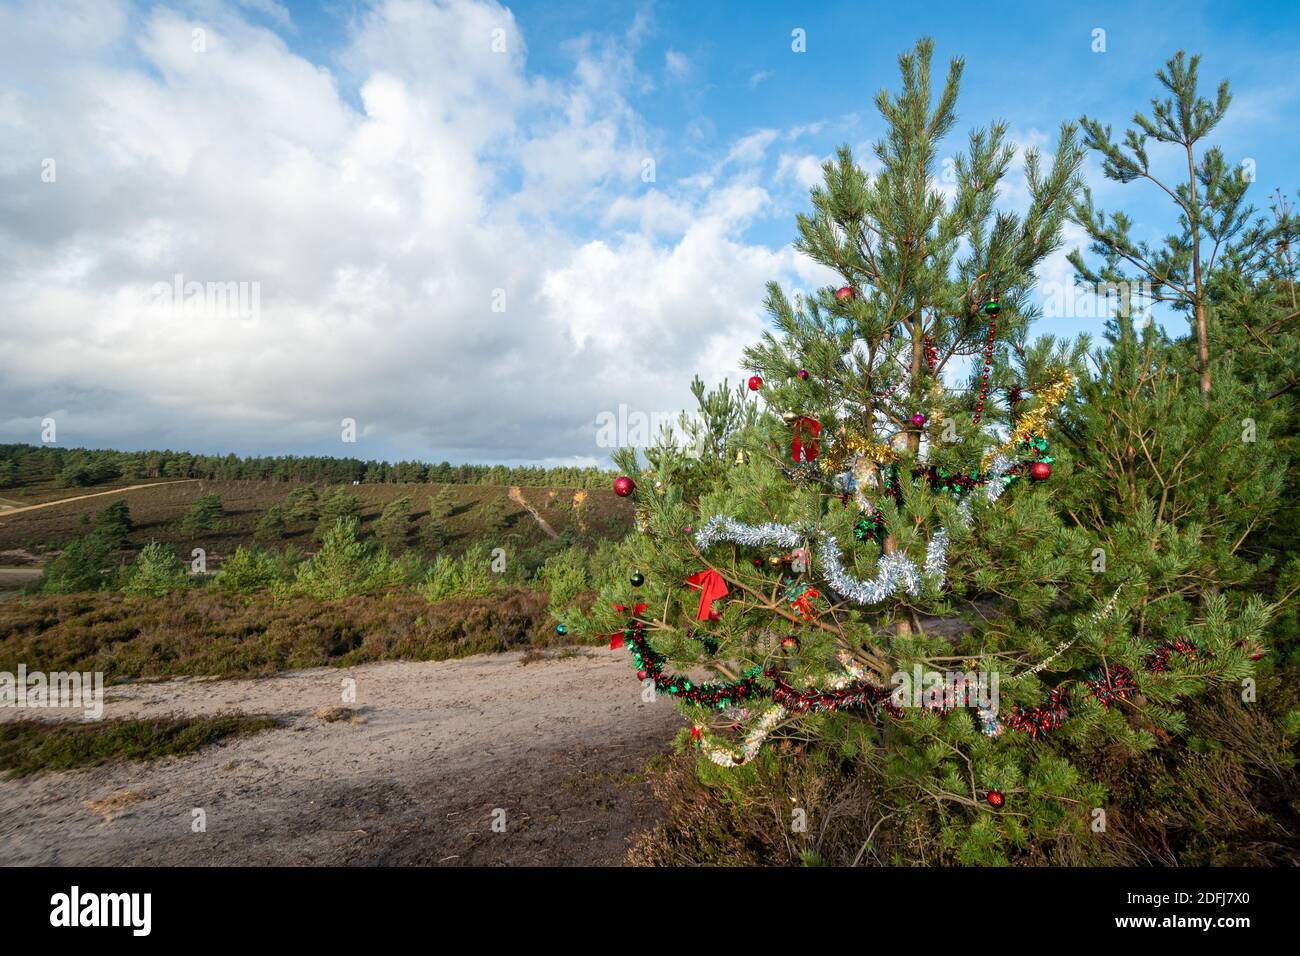 Ansicht von Hankley Common, Surrey, Großbritannien, im Dezember mit einem schottischen Kiefernbaum, der mit Weihnachtsdekorationen geschmückt ist Stockfoto